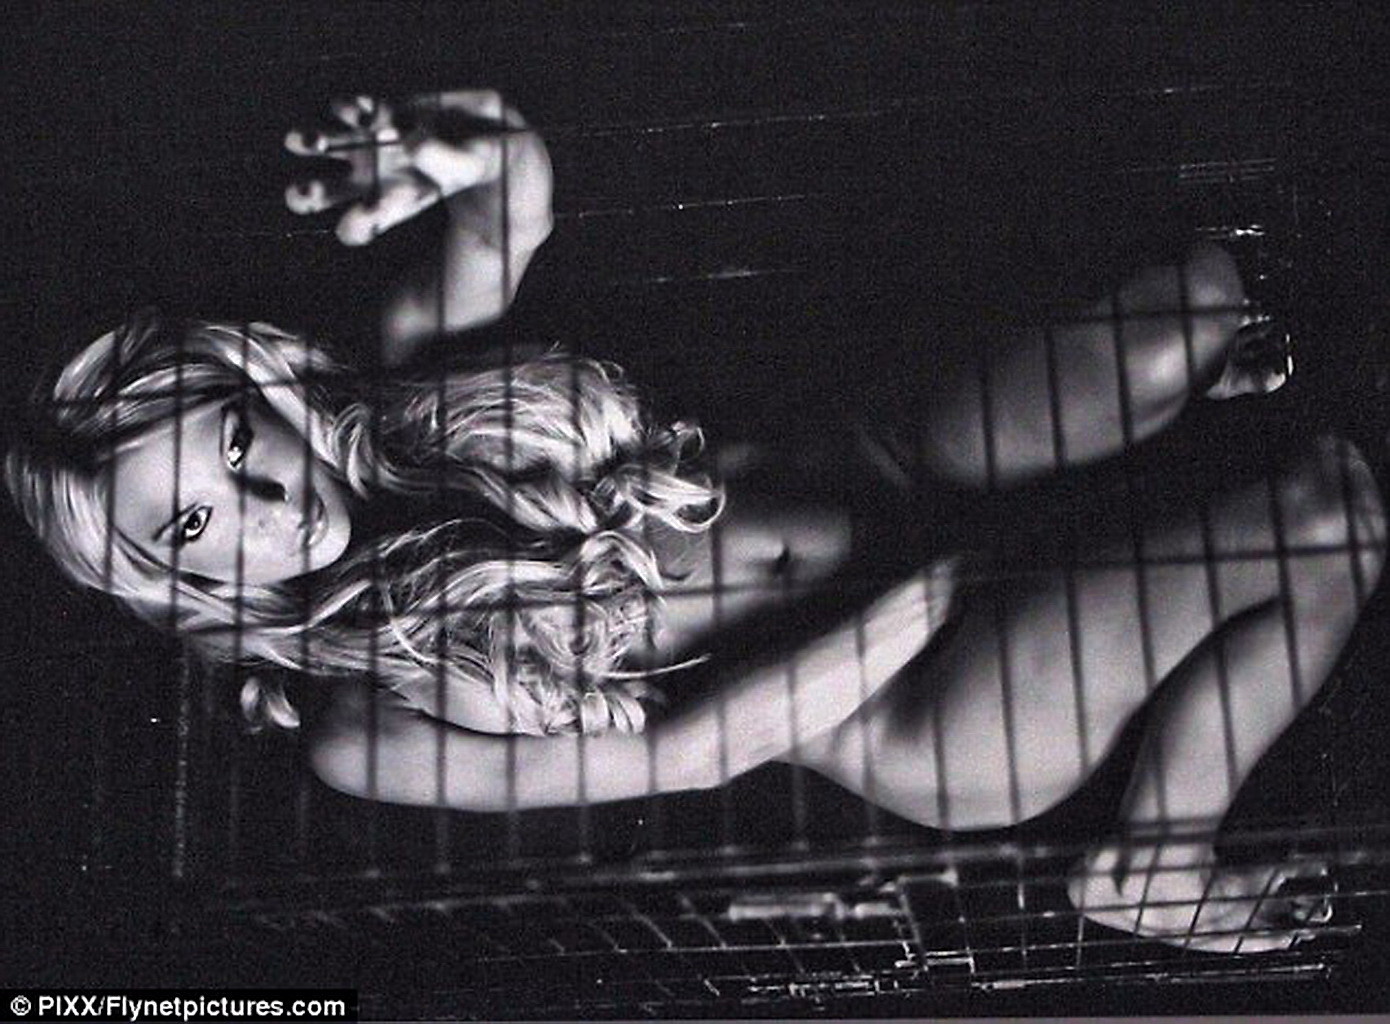 Brooke hogan desnuda en jaula para la nueva campaña publicitaria de peta
 #75292022